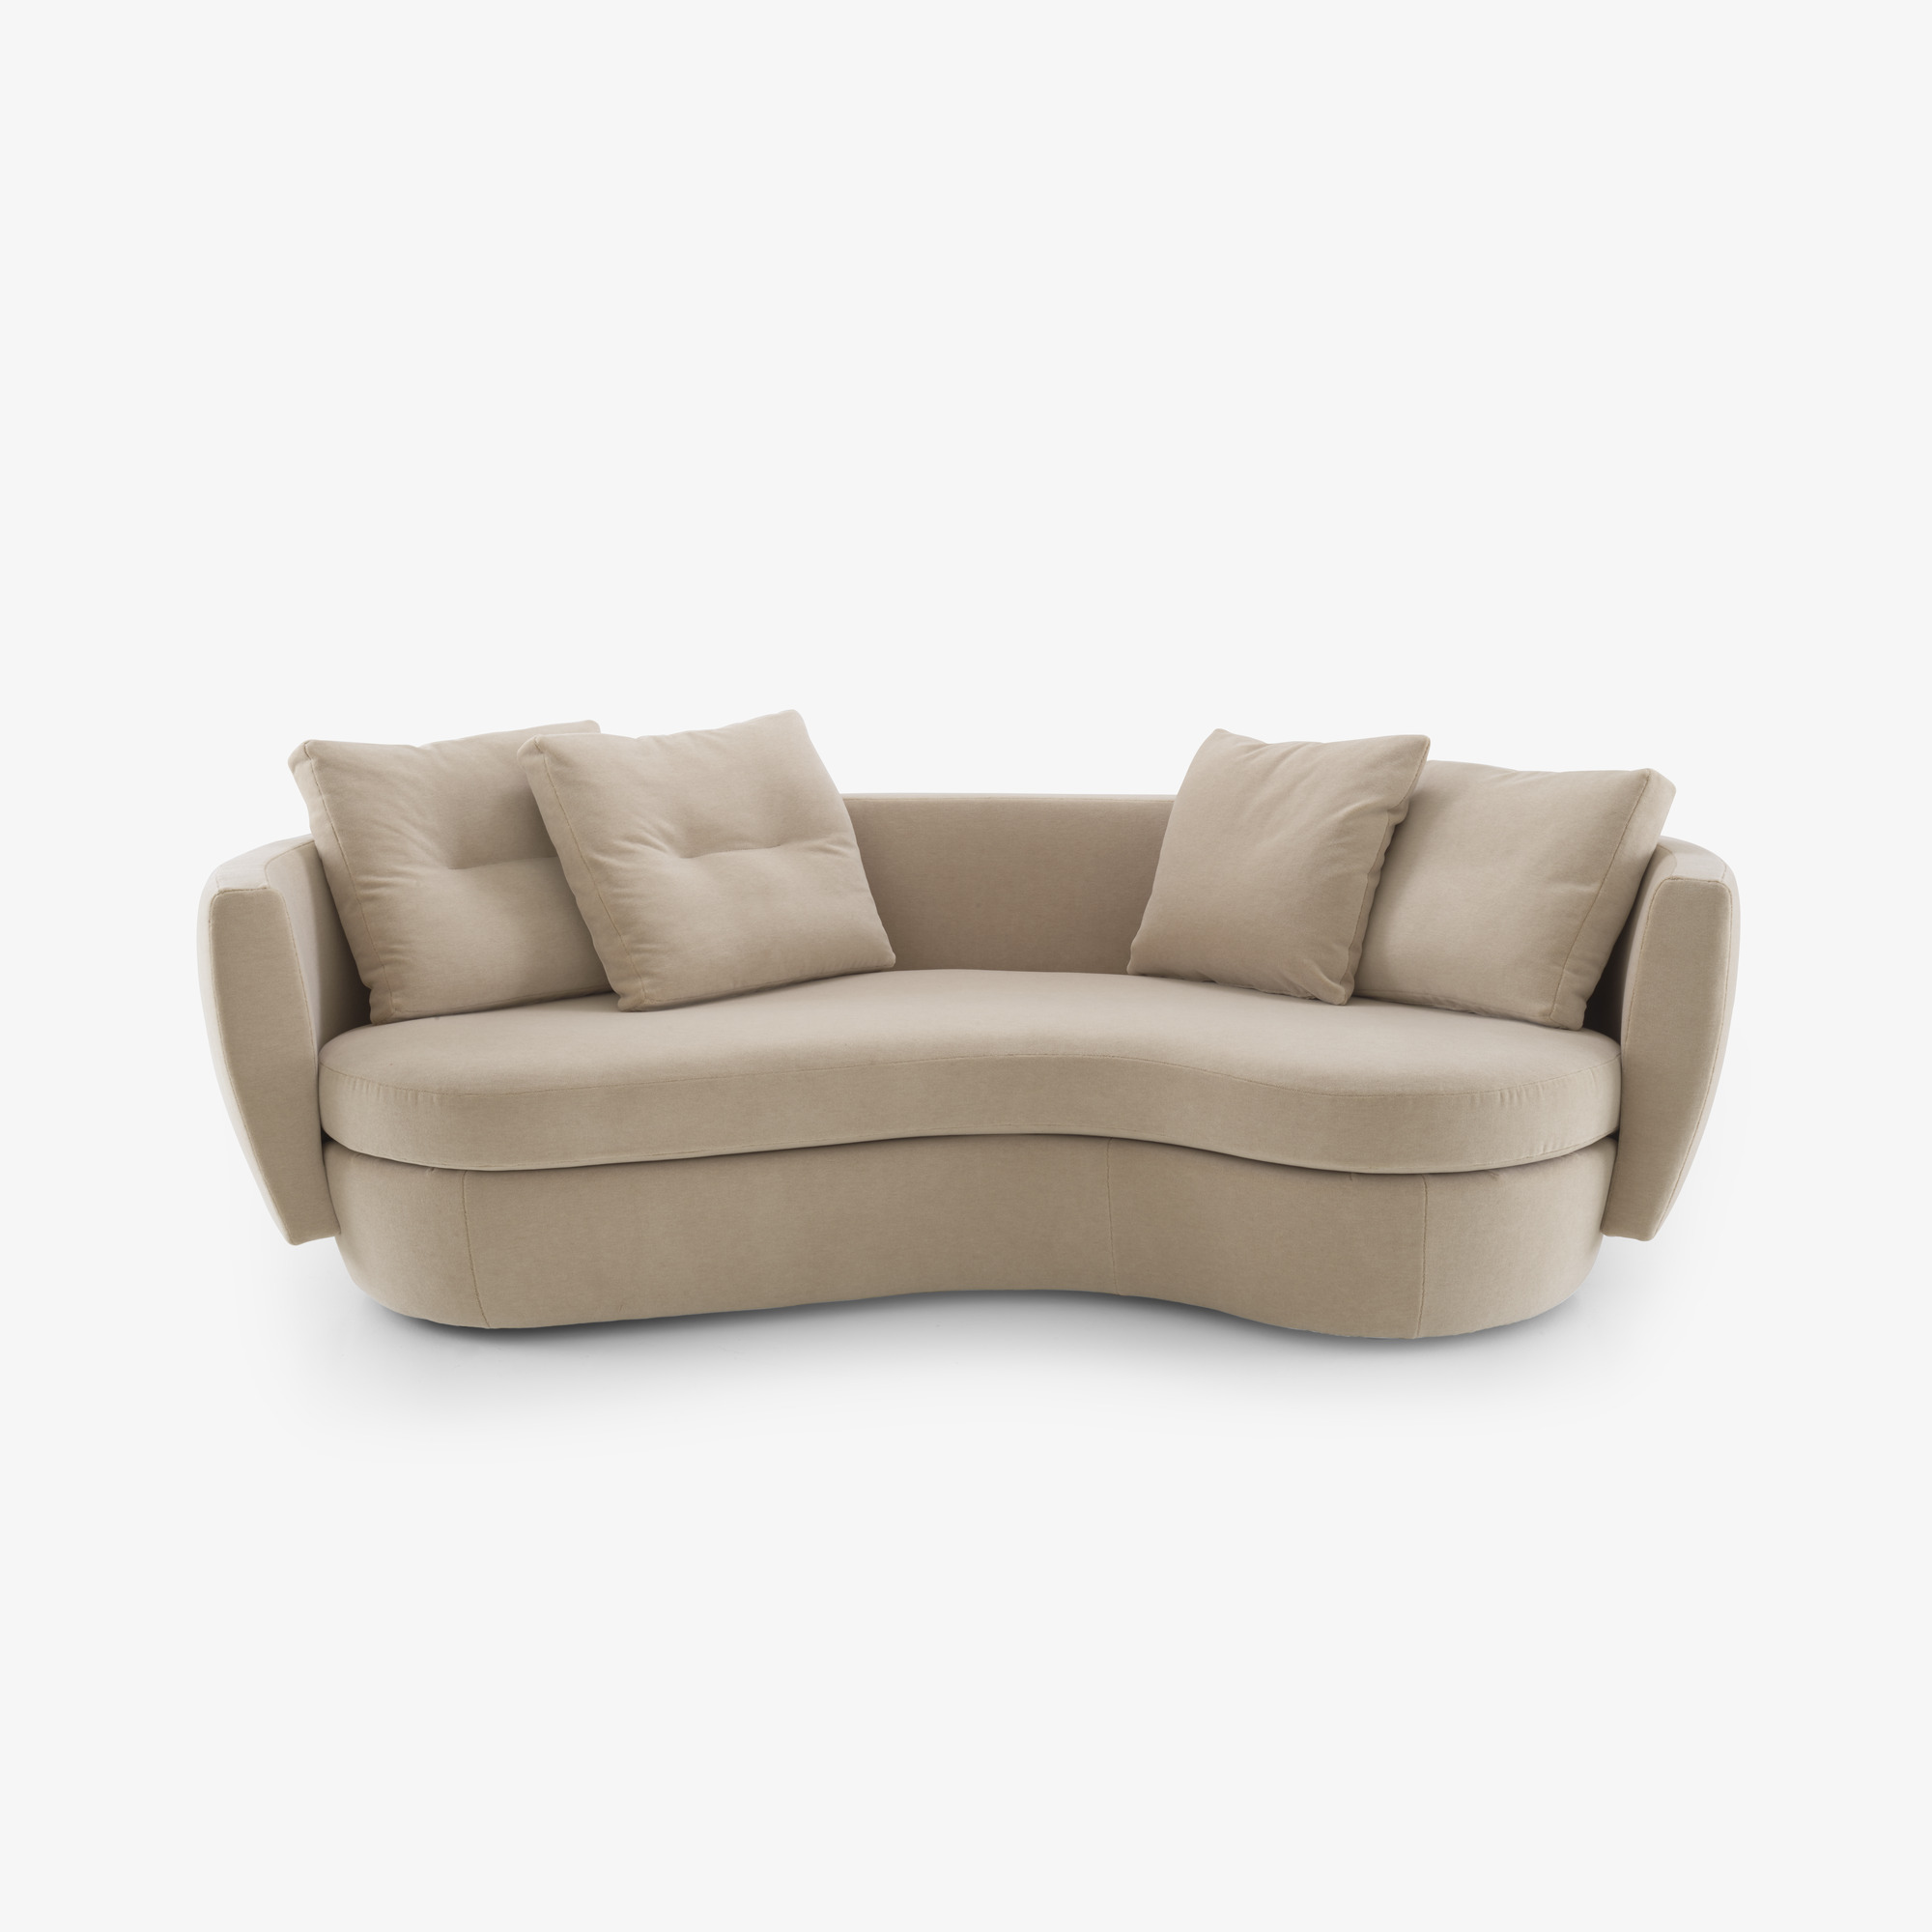 Image 曲线形沙发 套件  1